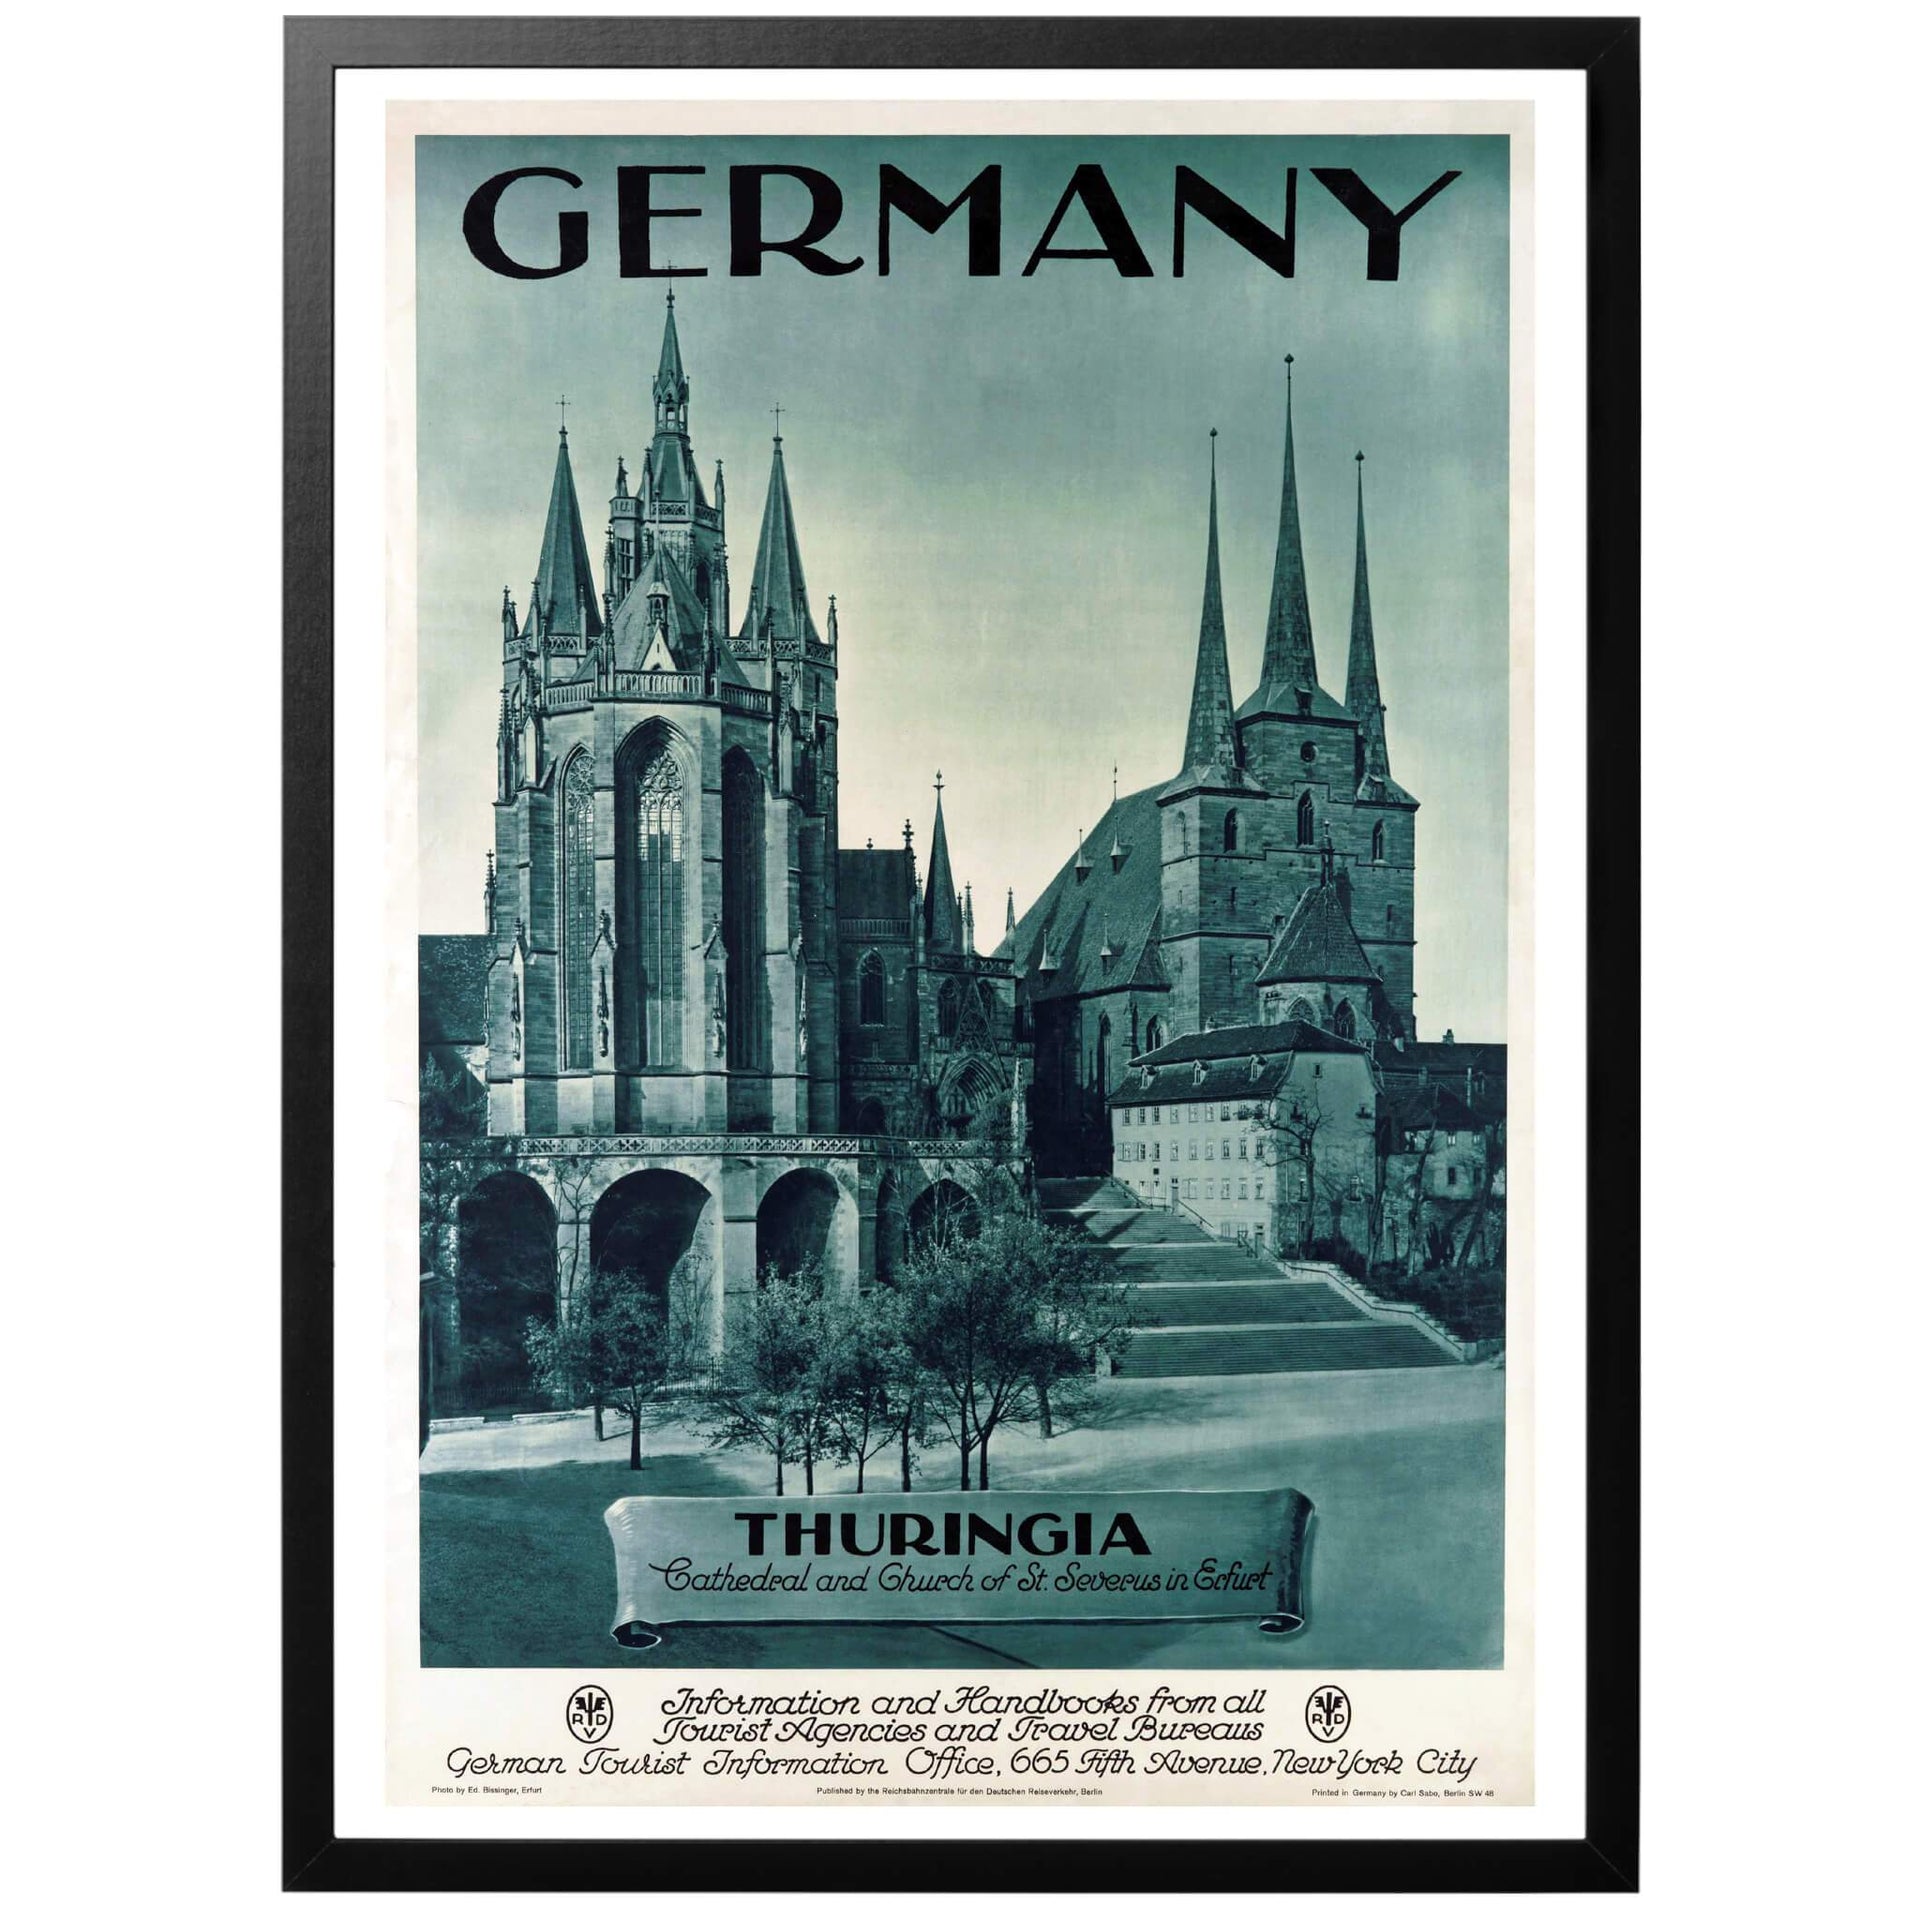 Germany Thuringia - Cathedral and St. Severius Church In Erfurt Tysk reseaffisch från 1935. Konstnär Georg Westermann och fotot är taget av Paul John. En reseaffisch för Tyska Thüringen. På bilden ser vi Katedral och St. Severus kyrkan i staden Erfurt, Thüringens "huvudstad"